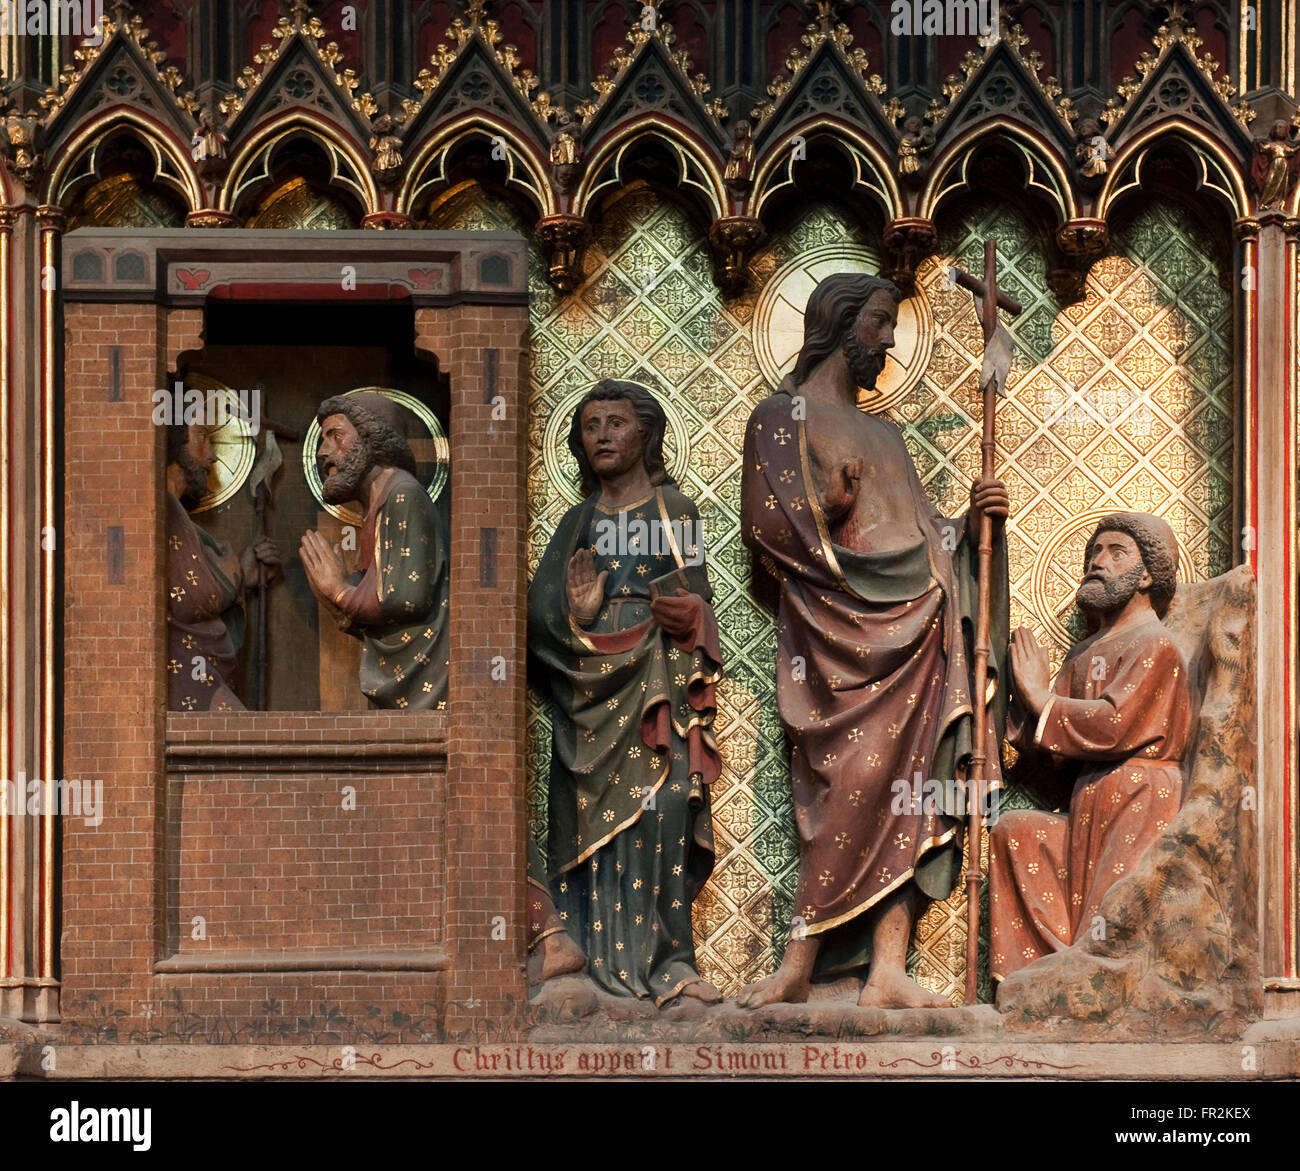 Scène de la vie du Christ, le Christ ressuscité apparaît à Pierre et Jean, Notre Dame de Paris, Paris, France Banque D'Images